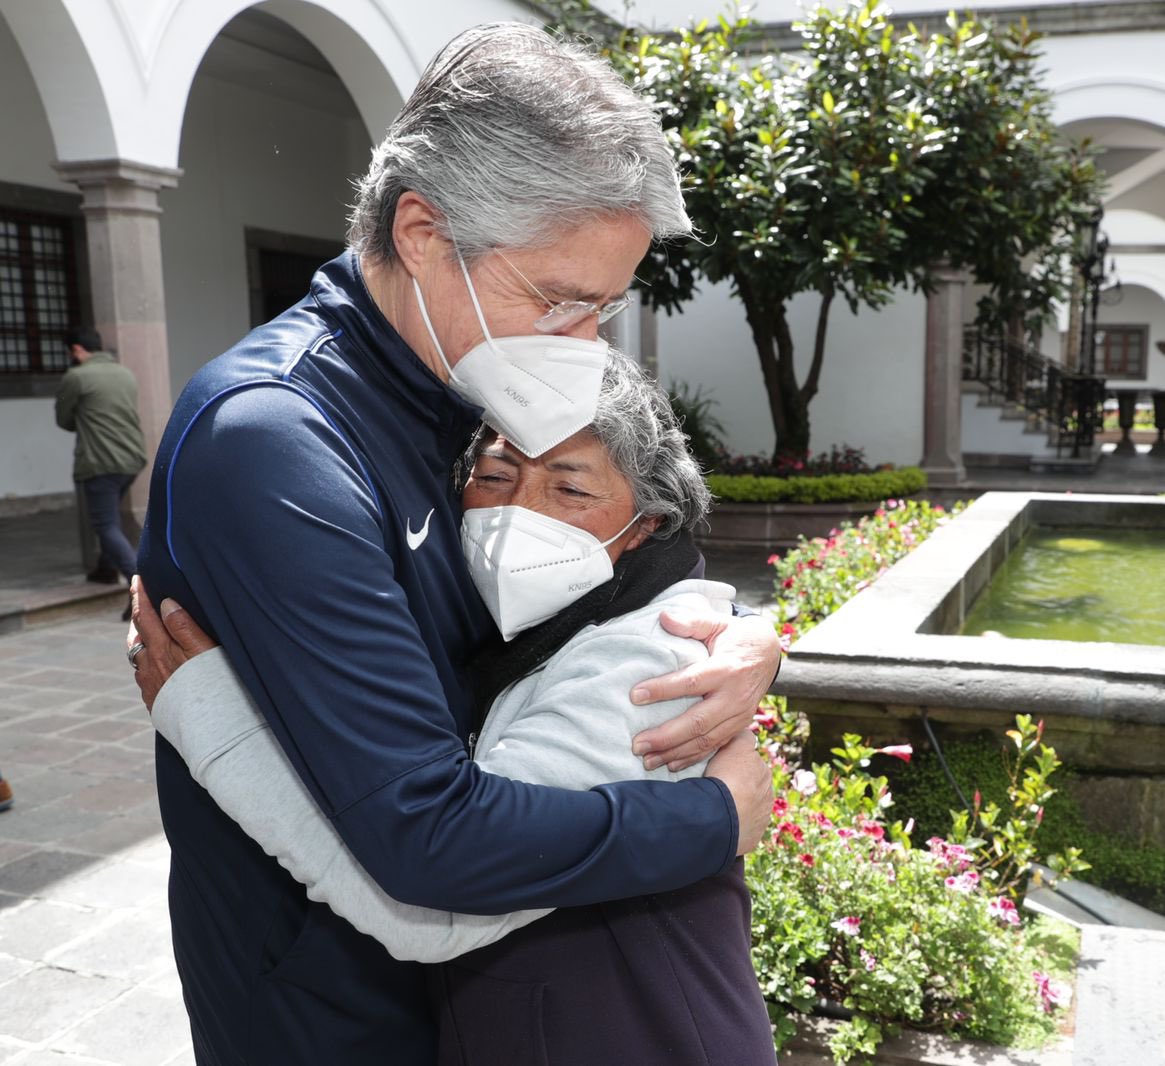 El caso de Marta Yambay tuvo tal repercusión que el presidente de Ecuador, Guillermo Lasso, se reunió con ella y le ofreció ayuda.